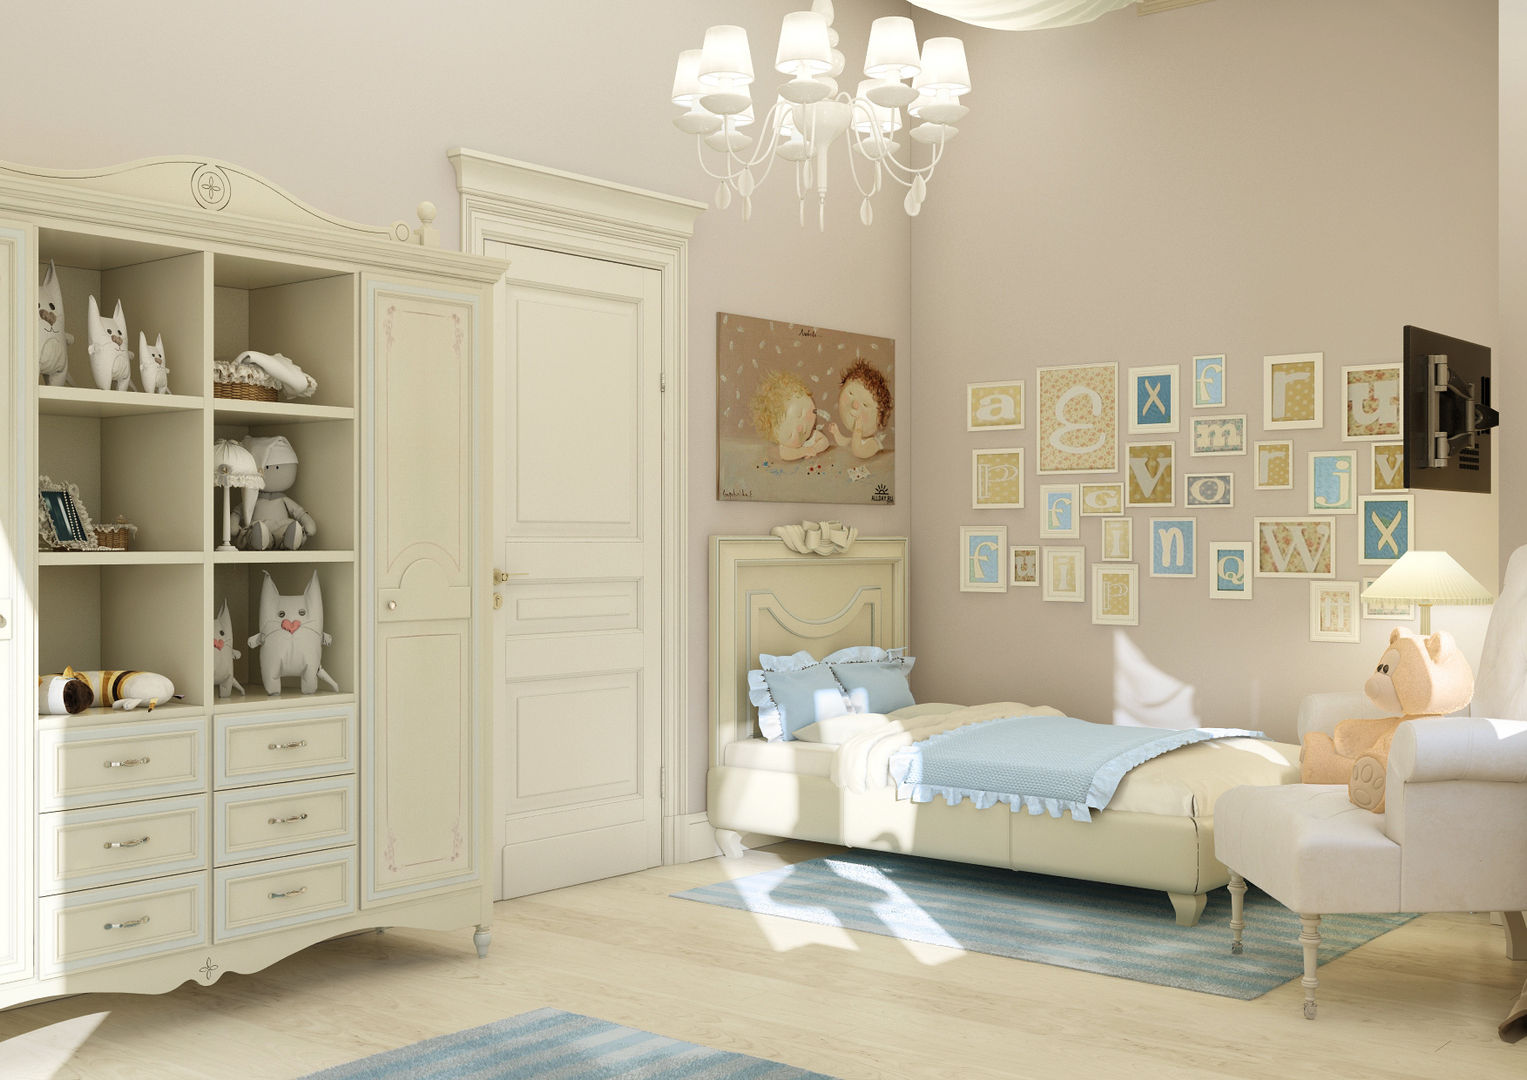 Дизайн коттеджа "Комната маленькой принцессы" , Samarina projects Samarina projects Nursery/kid’s room